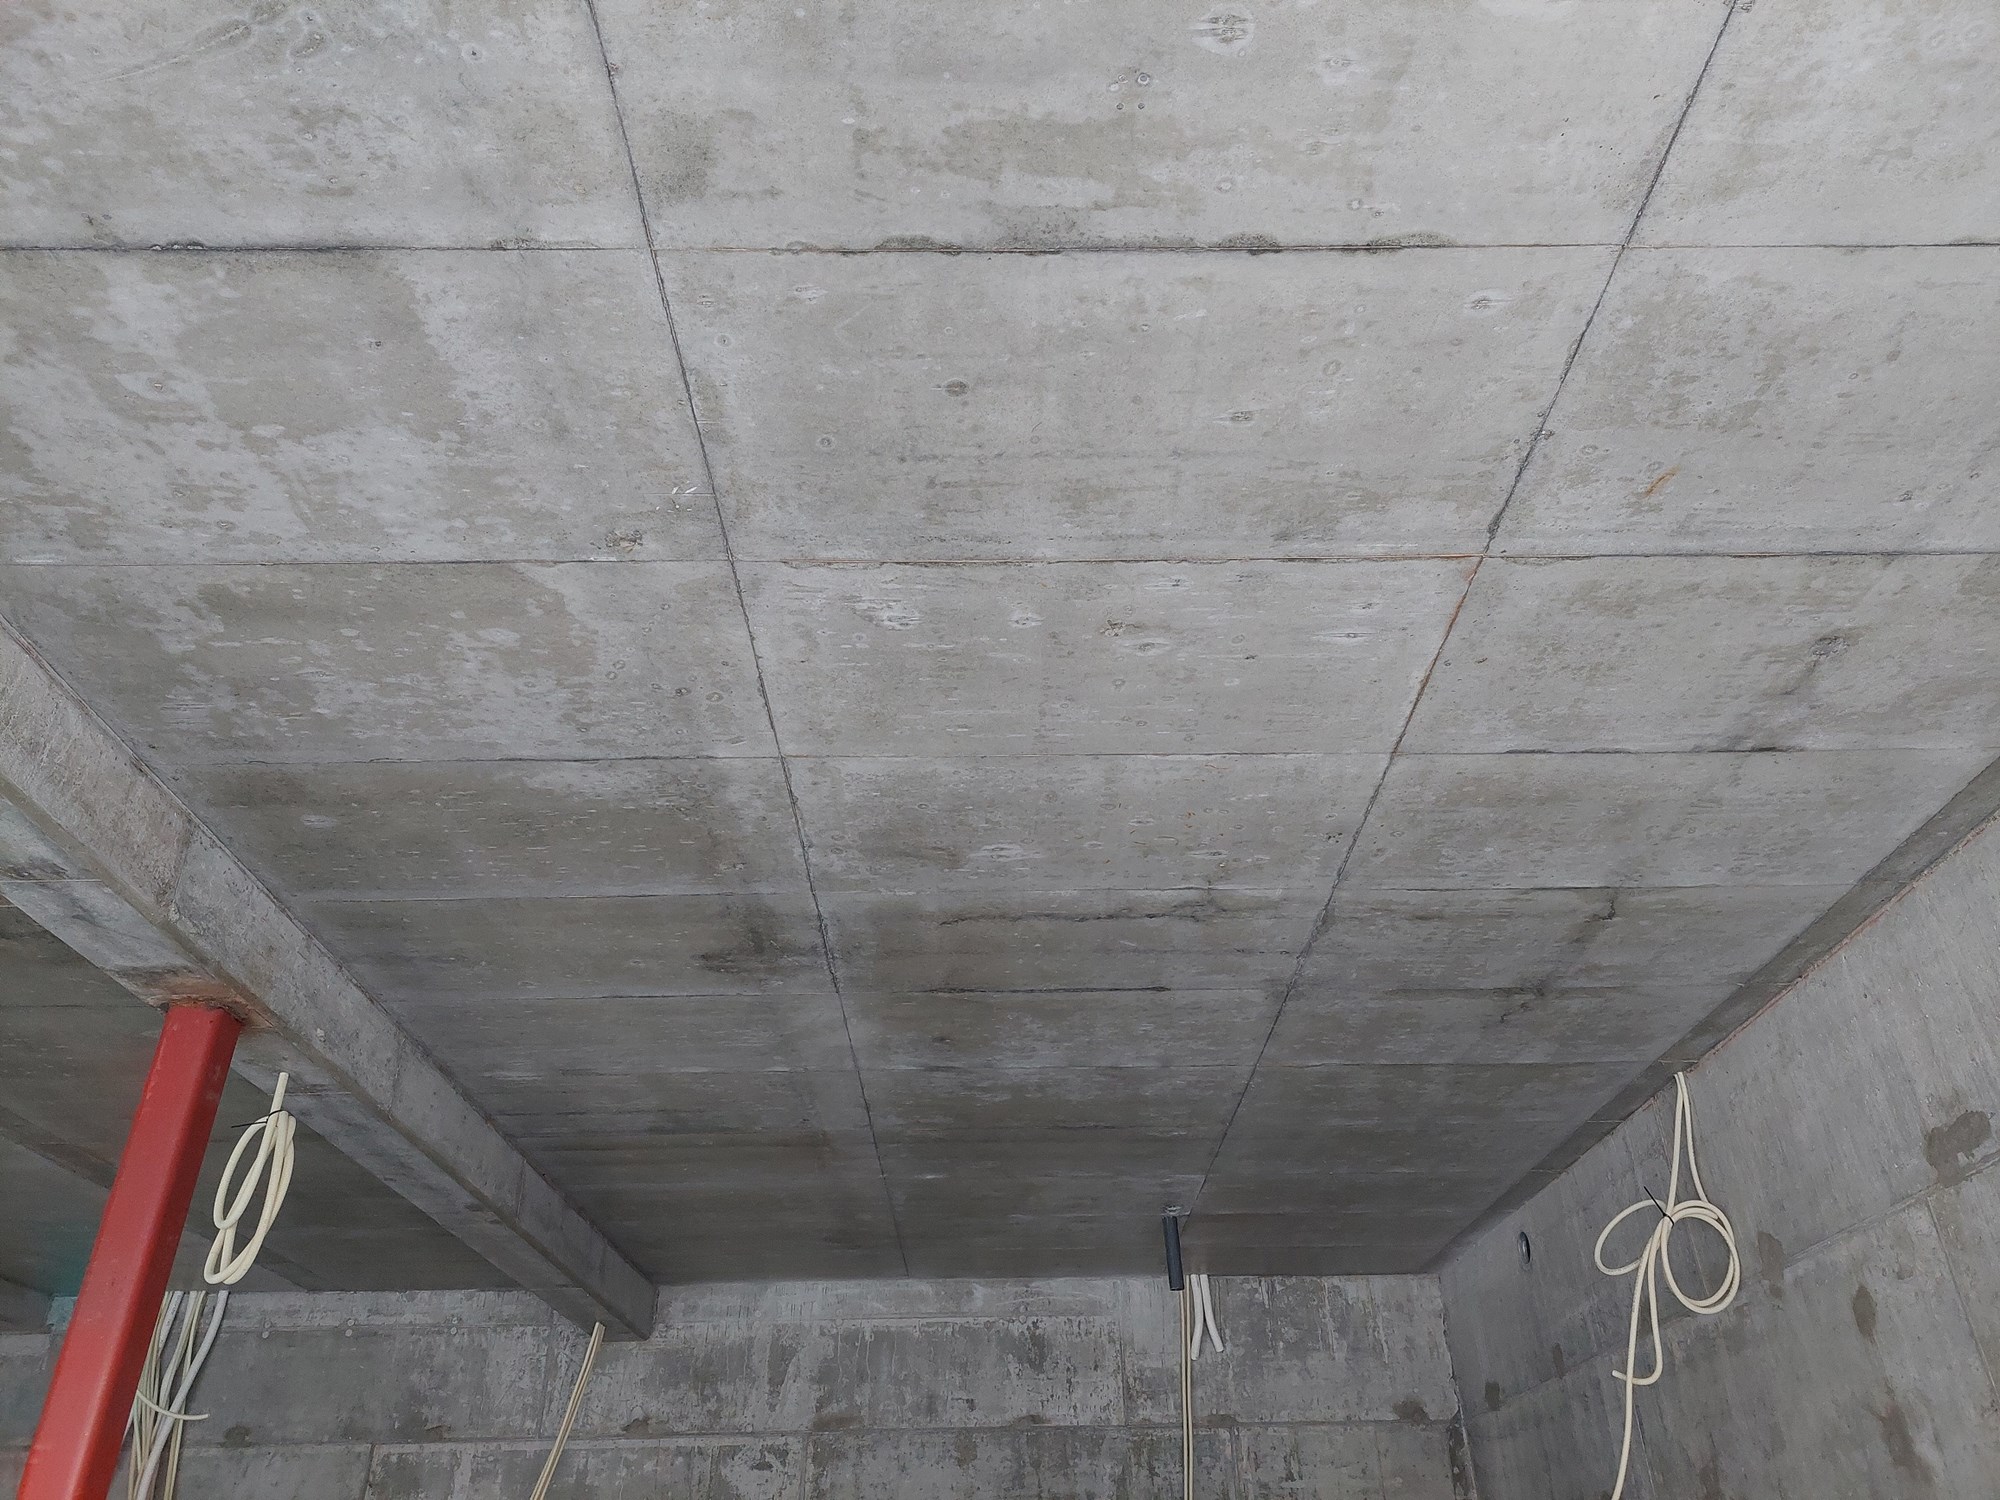 Isolert hobbygarasje i plasstøpt betong, male ny betong innvendig - 20211128_142214.jpg - eehgil